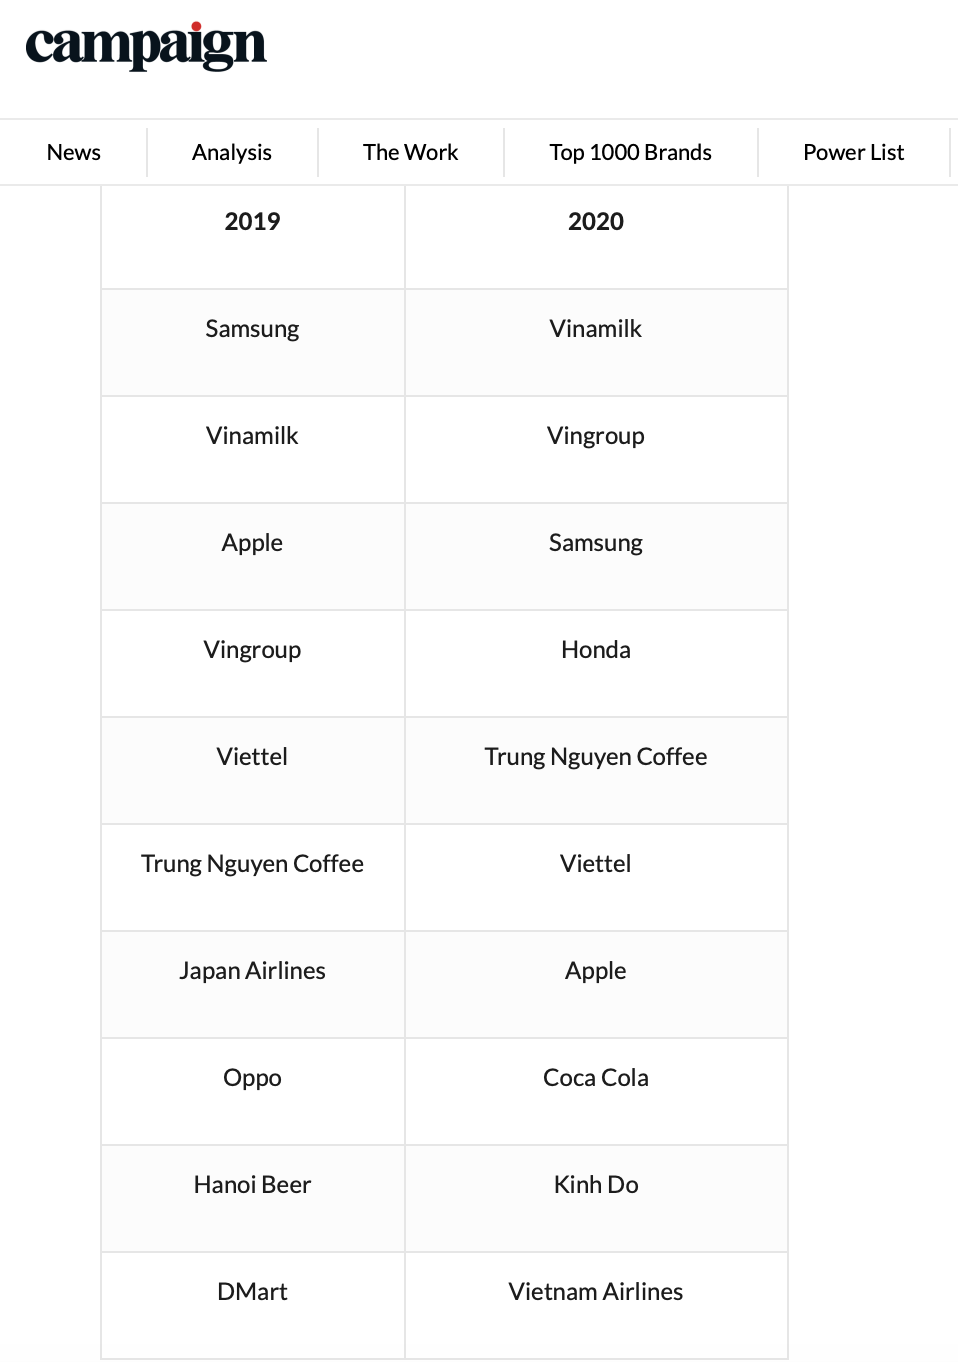 Danh sách các thương hiệu được yêu thích nhất Việt Nam năm 2019 và năm 2020.